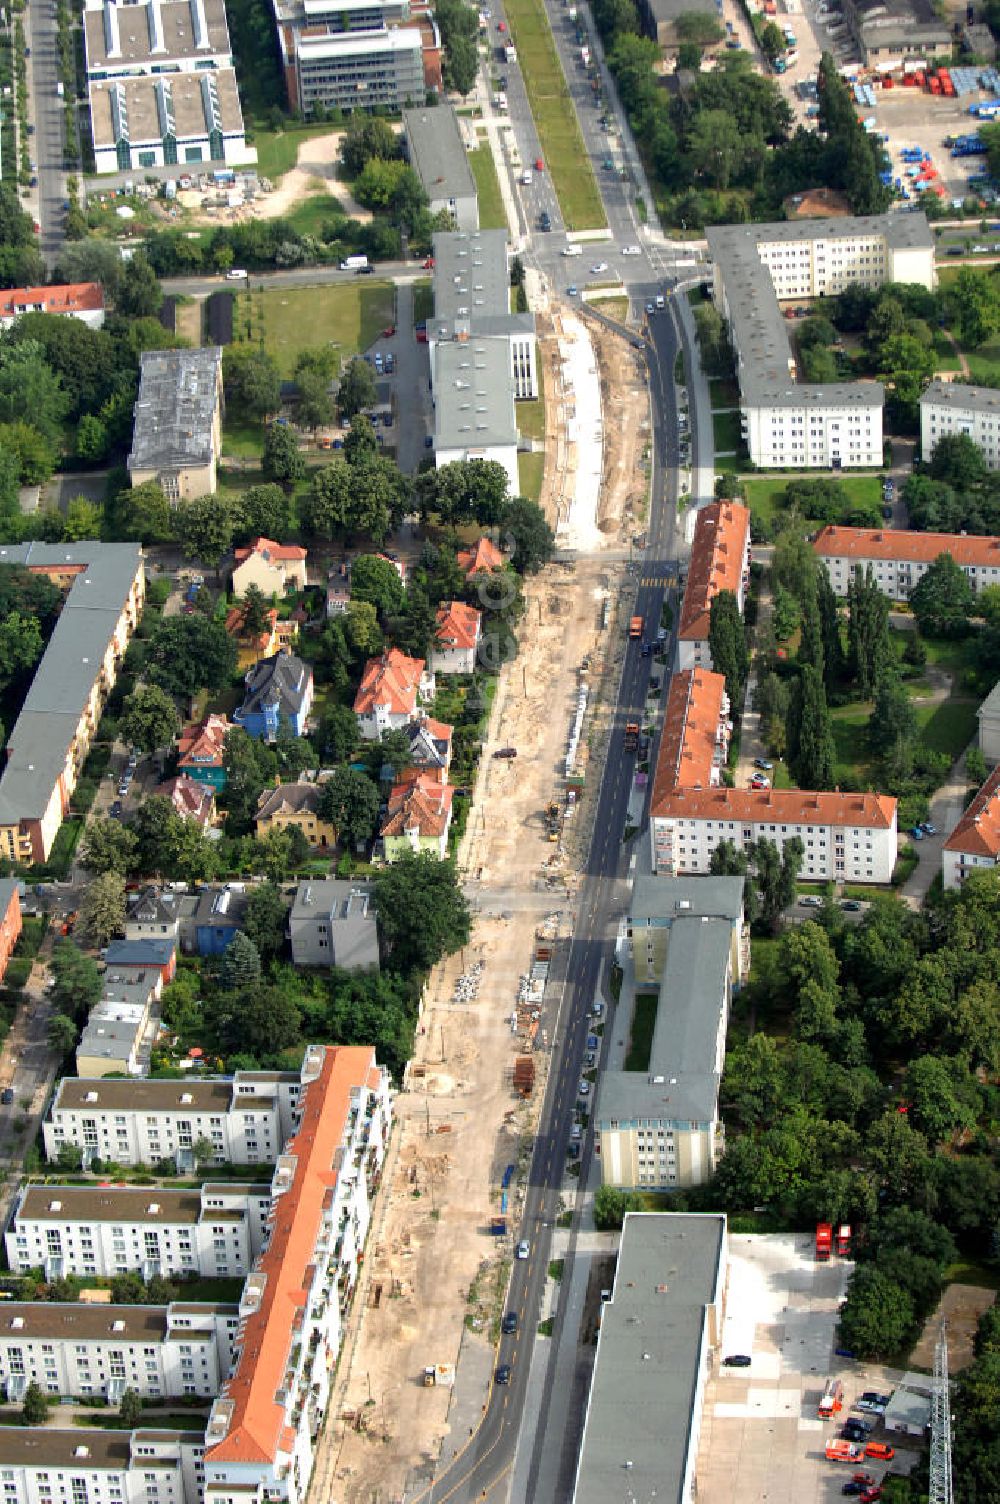 Luftbild Berlin - Blick auf eine Bebauungsfläche am Groß-Berliner Damm in Berlin-Adlershof